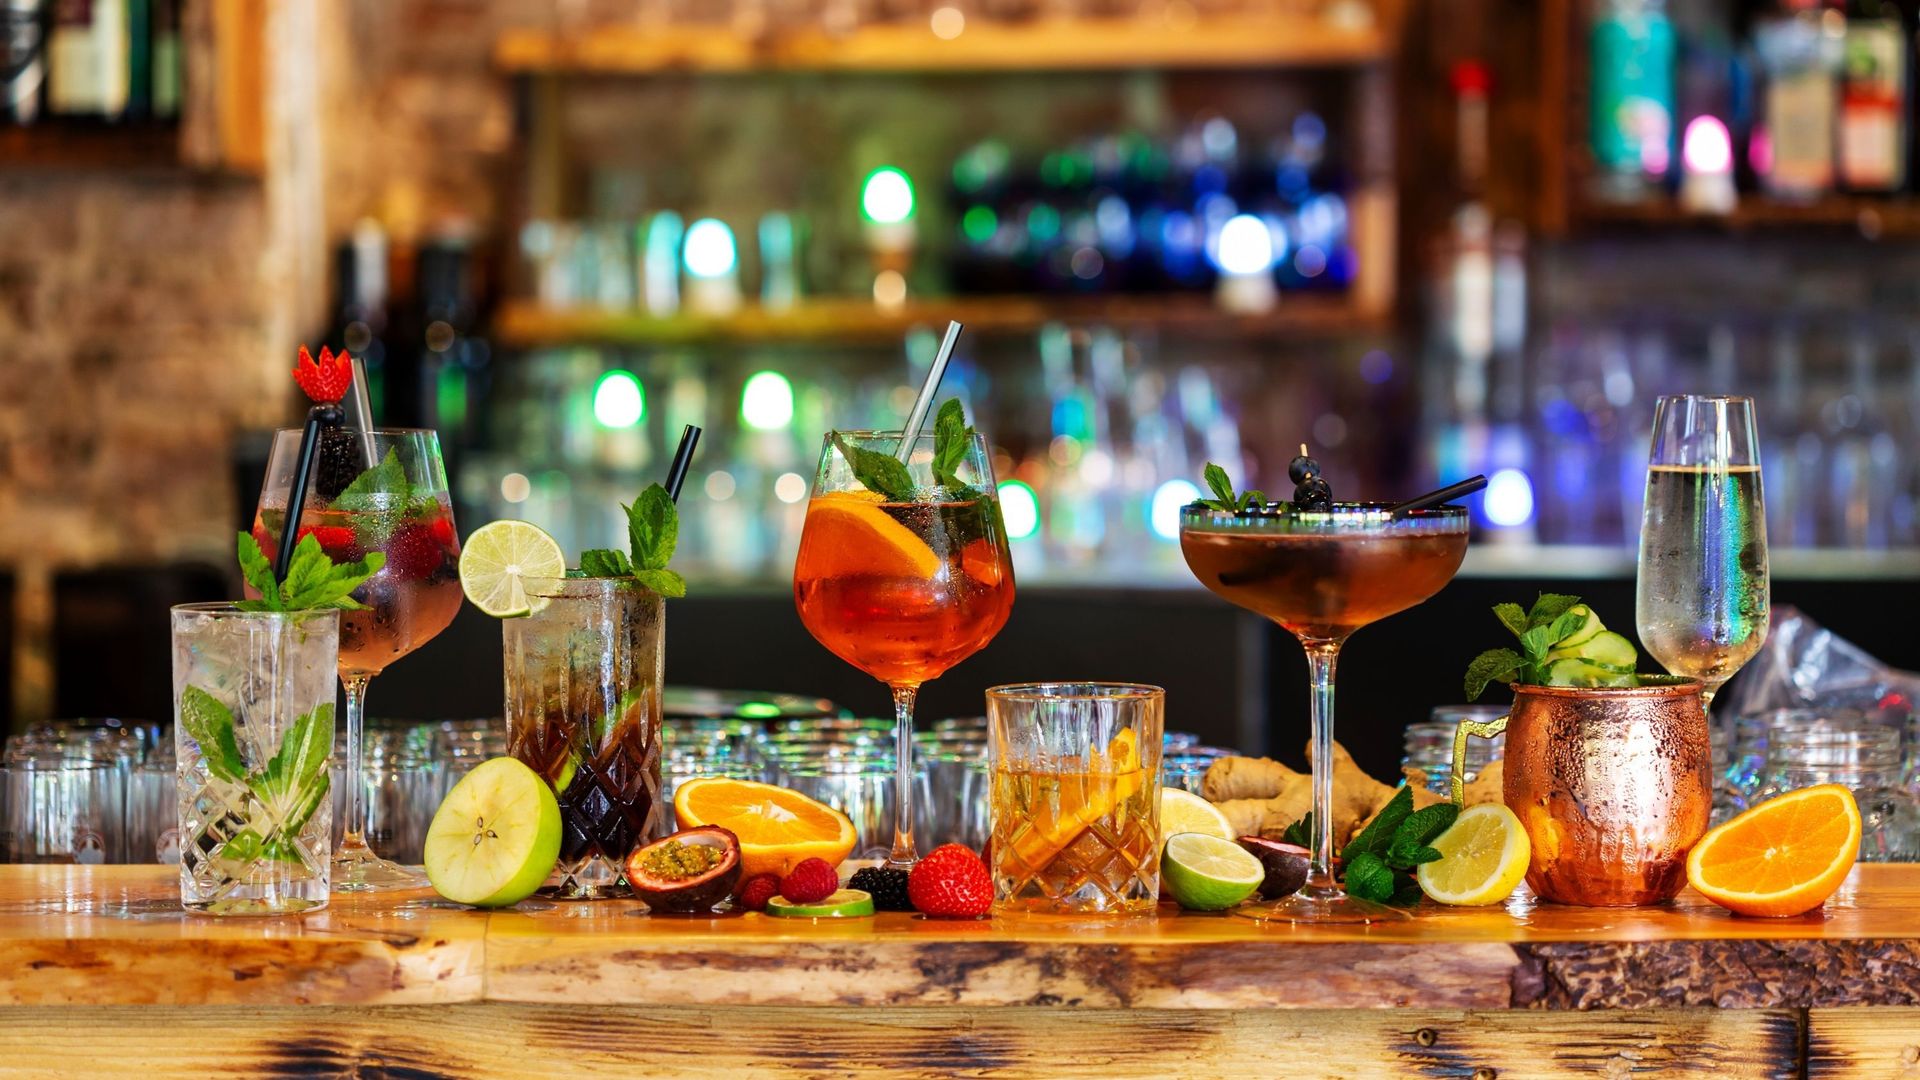 Les meilleurs bars à cocktails de Belgique, d'après le guide Gault&Millau 2022